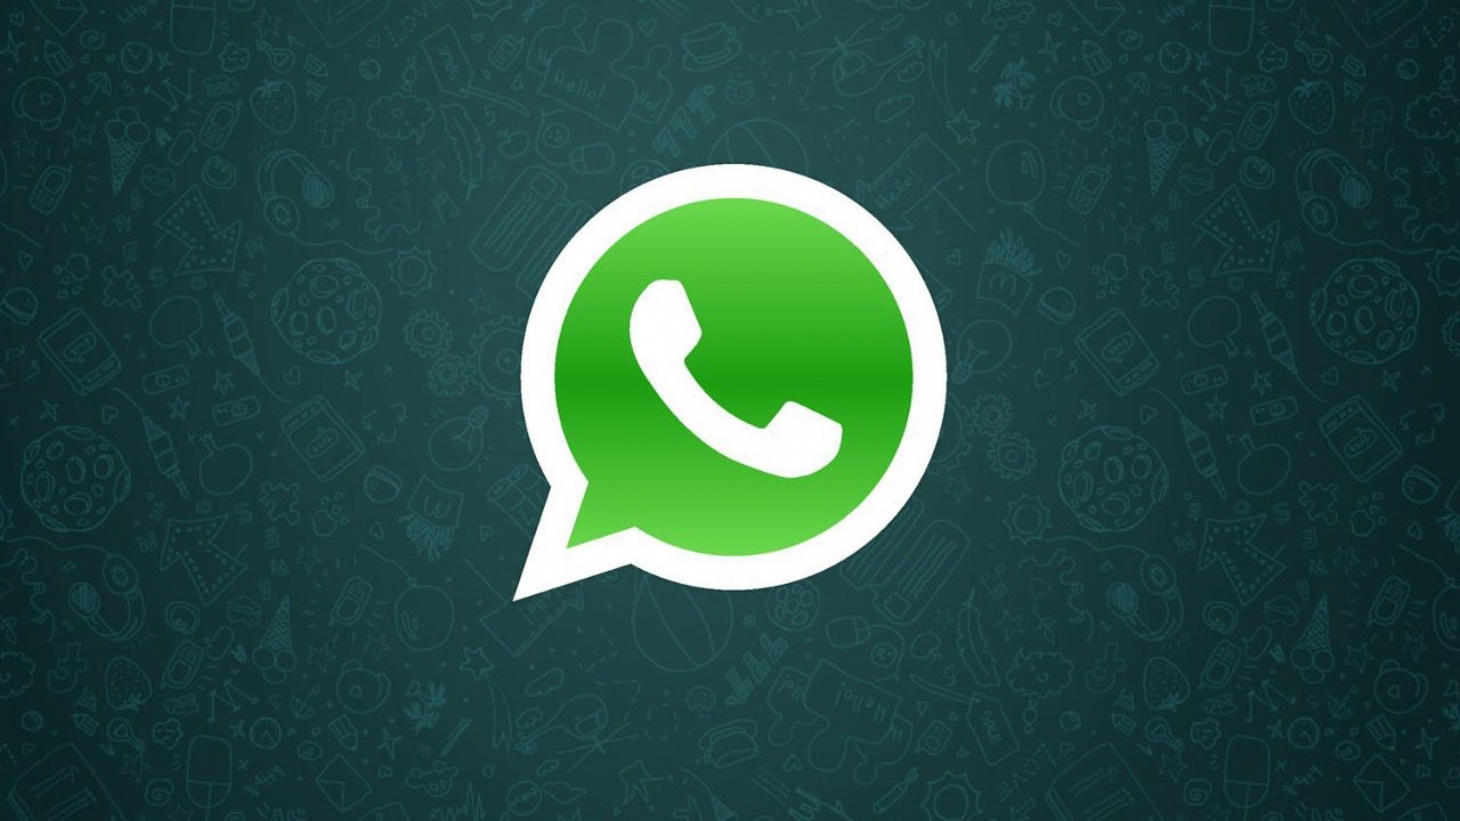 WhatsApp e Instagram voltam a funcionar após instabilidade | Jornal da Orla